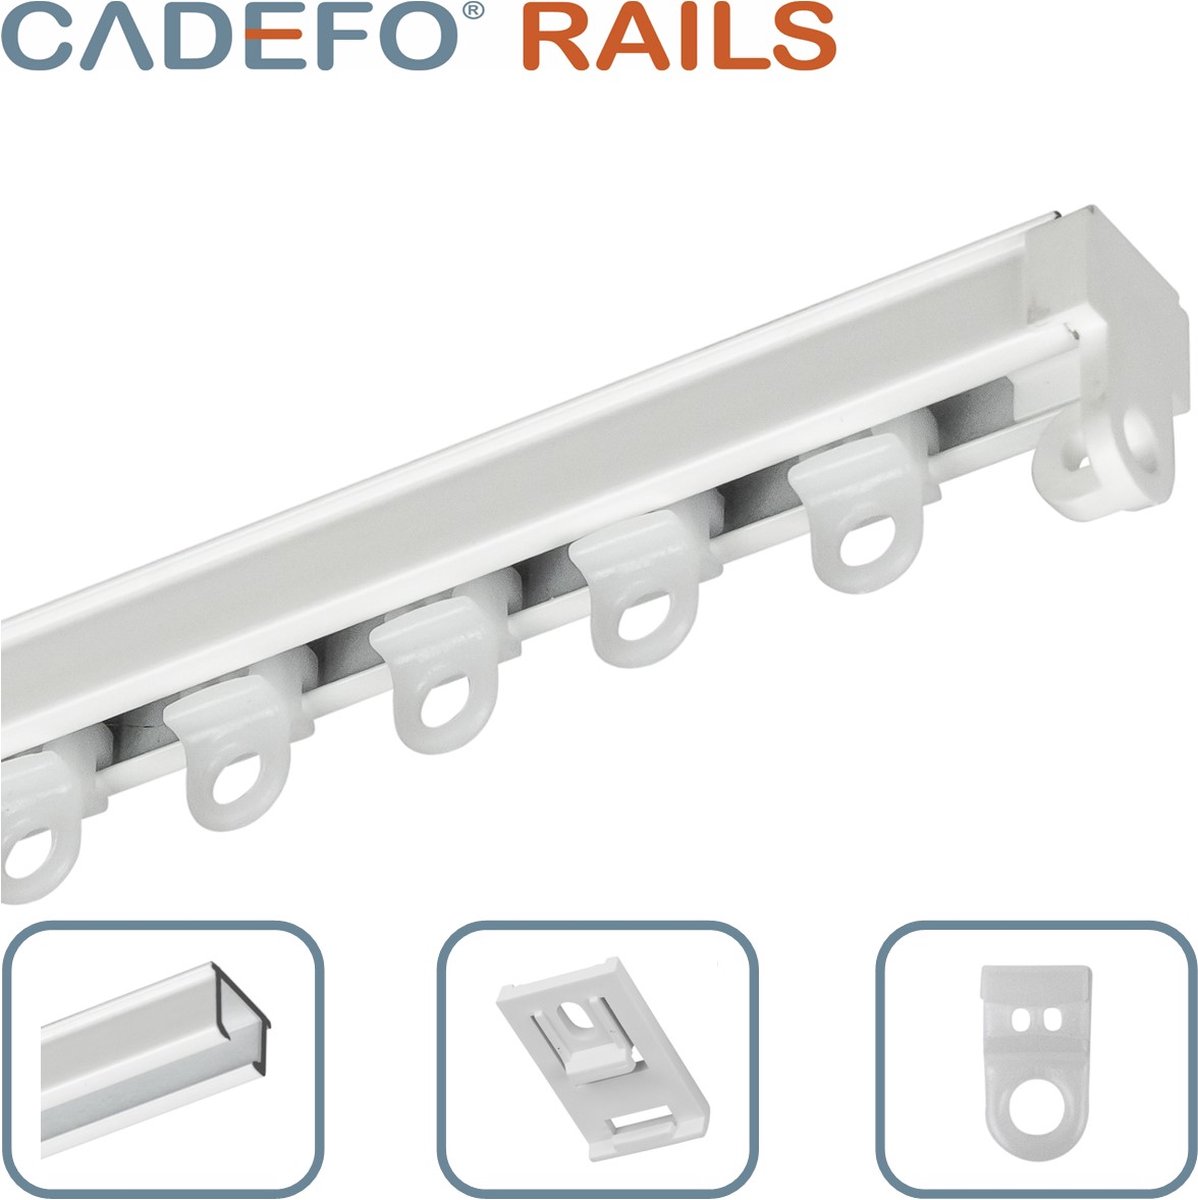 CADEFO RAILS (201 - 250 cm) Gordijnrails - Compleet op maat! - UIT 1 STUK - Leverbaar tot 6 meter - Plafondbevestiging - Lengte 227 cm